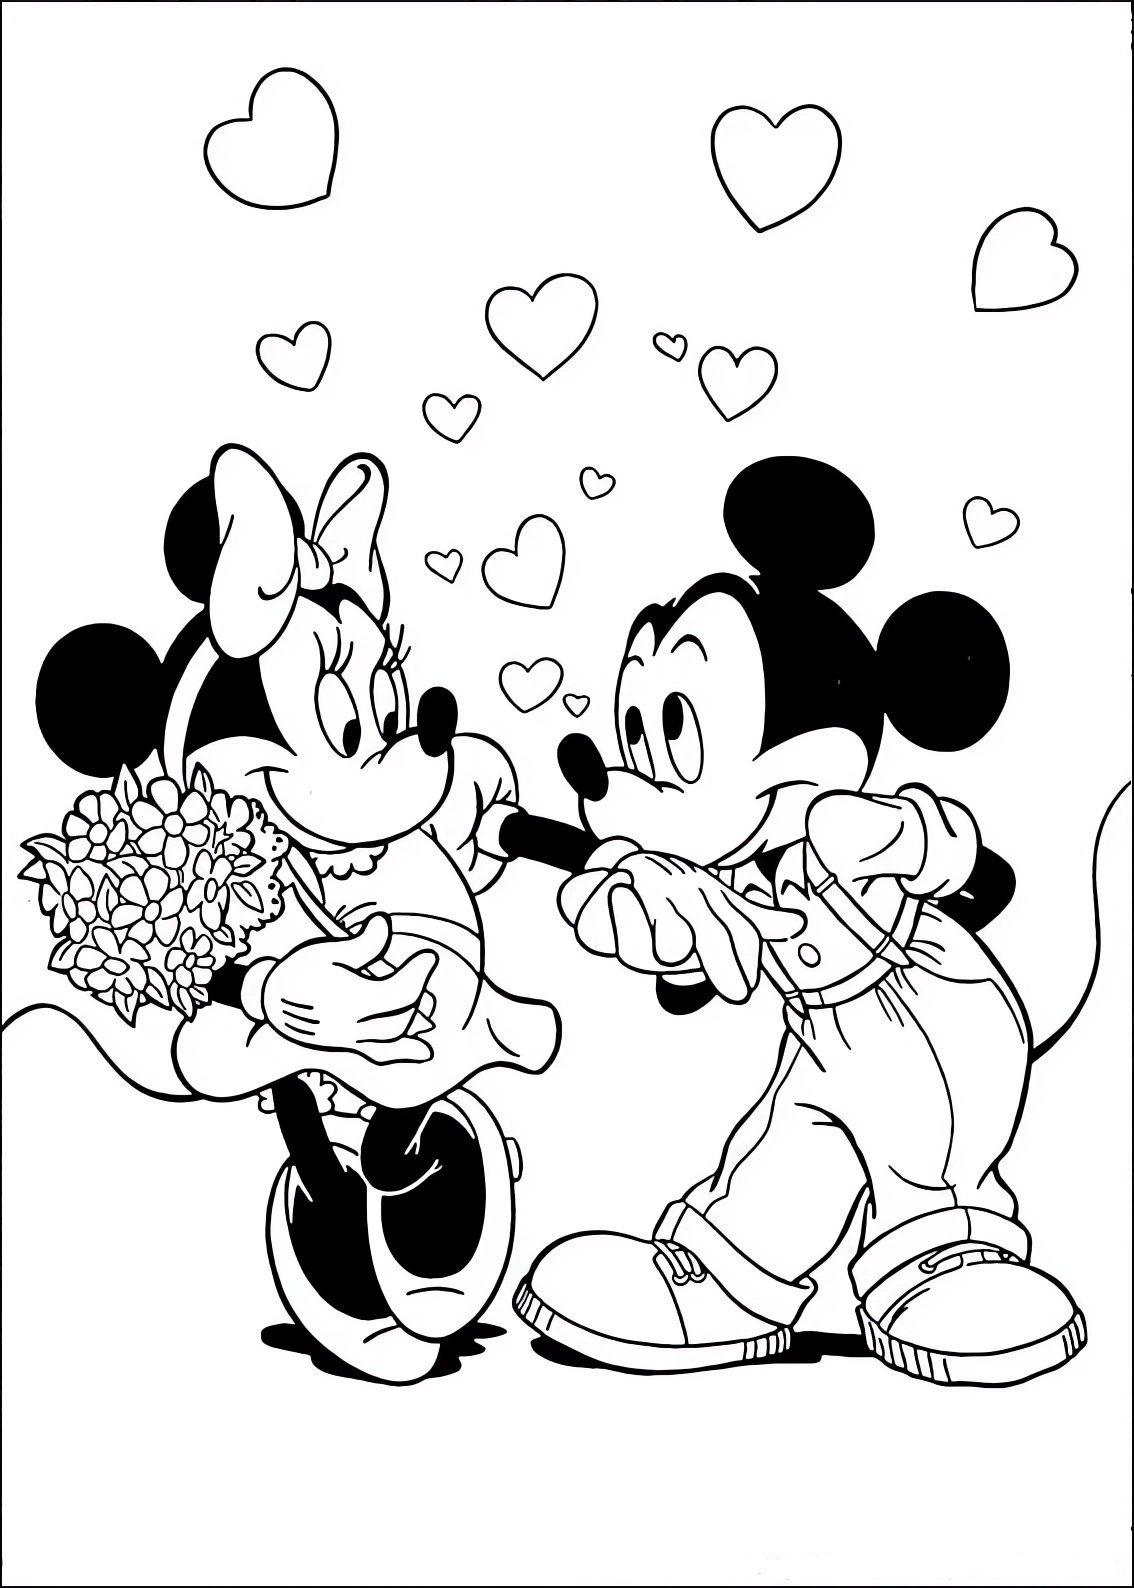 Disegno da colorare di Minnie e Topolino (Mickey Mouse) innamorati con un mazzo di fiori